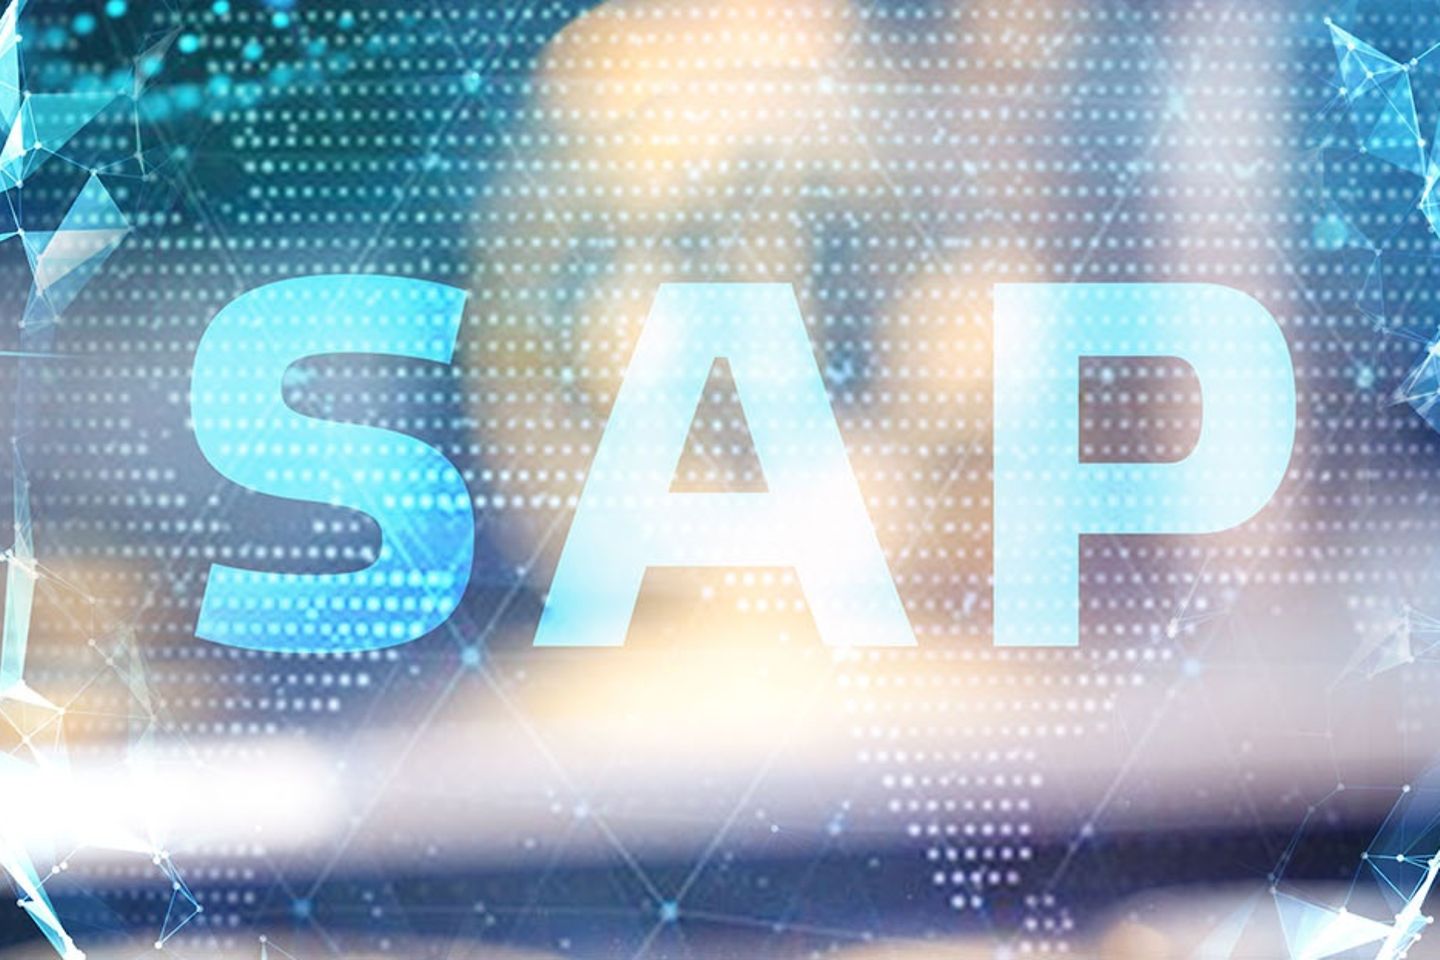 Eine virtuelle Darstellung von Punkten, die durch Linien miteinander verbunden sind, sowie das Logo von SAP.